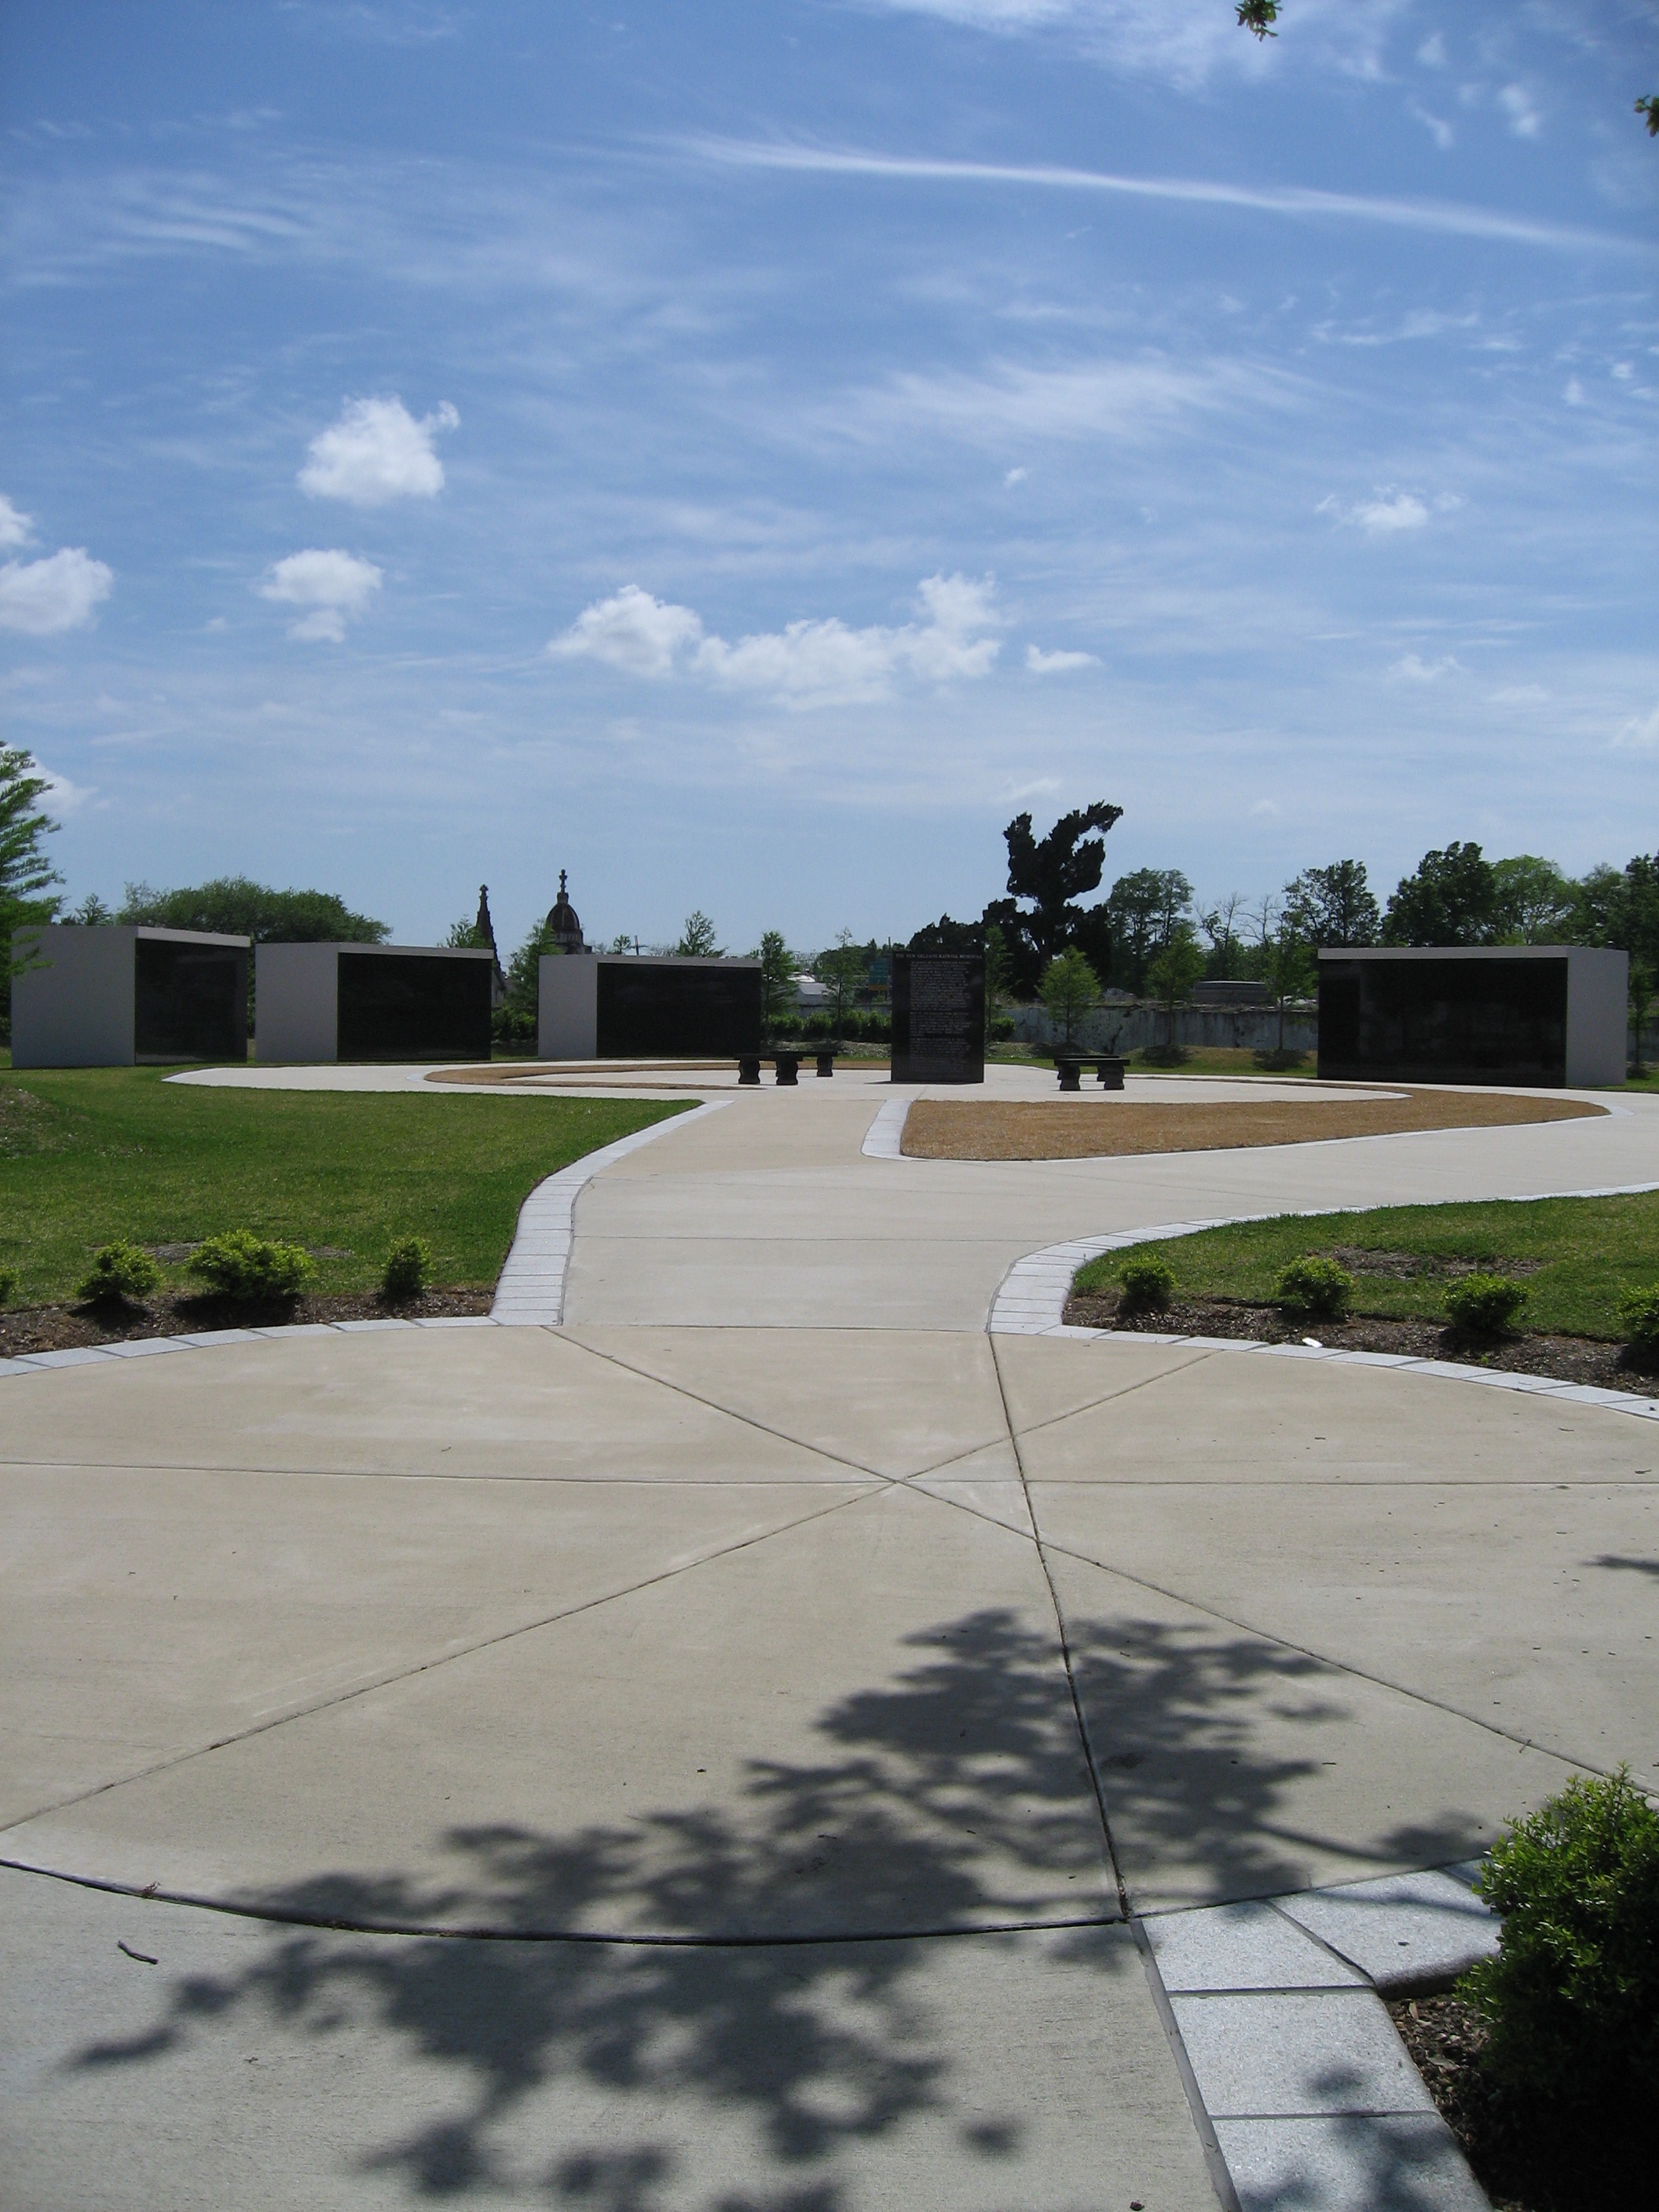 The Katrina Memorial